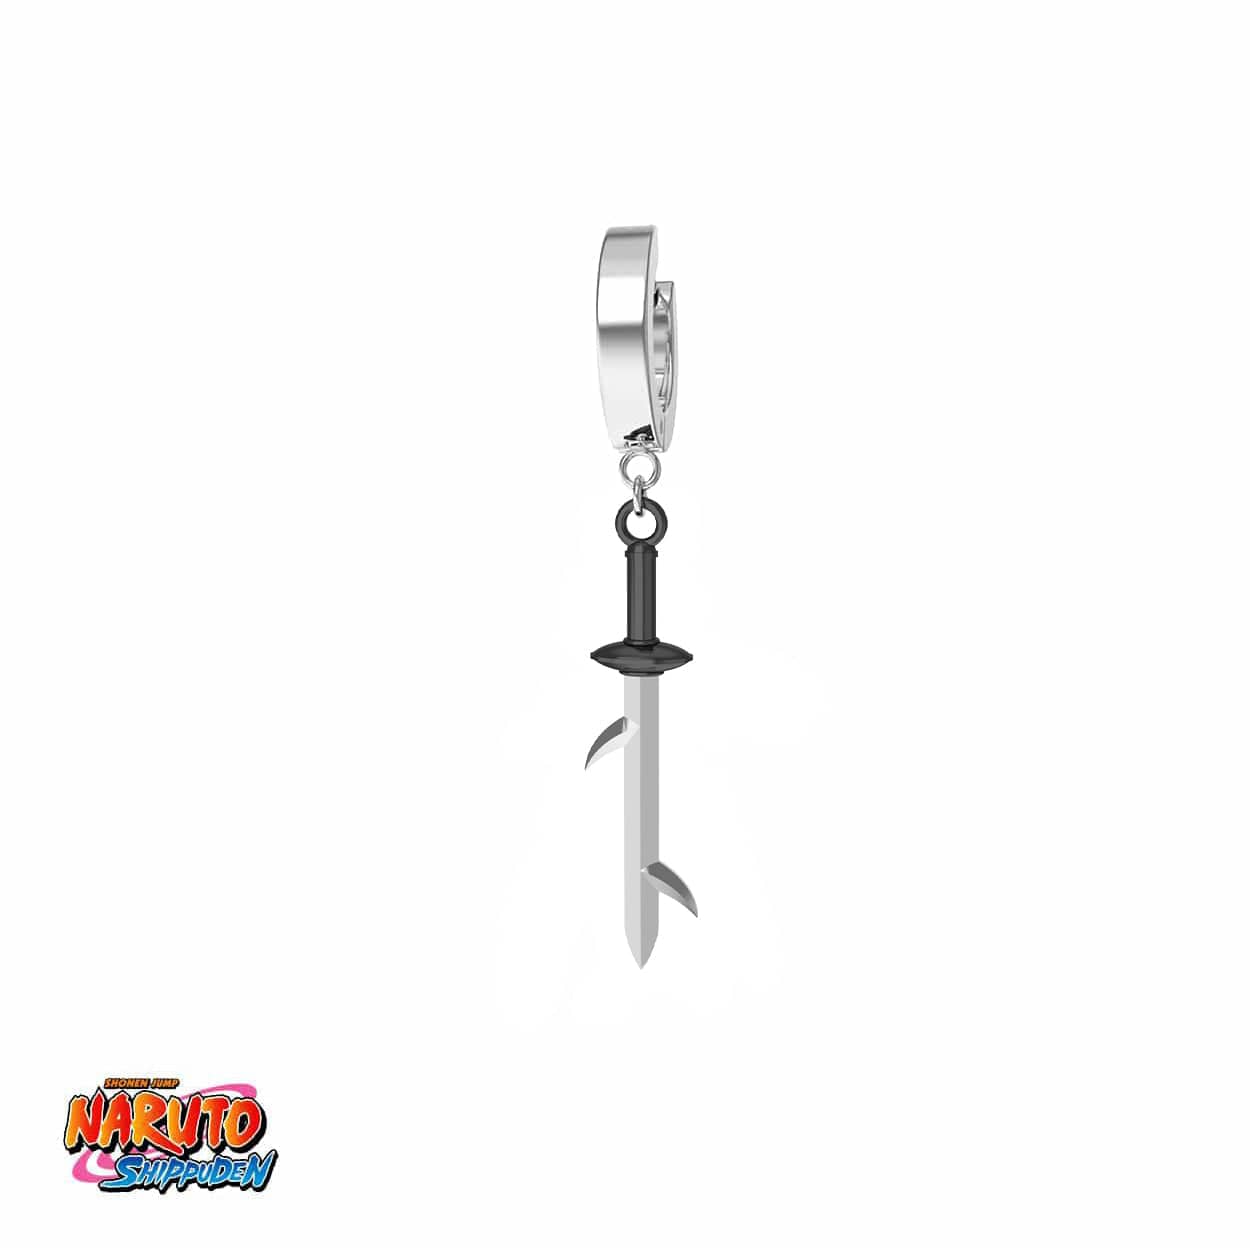 Naruto™ Fang Sword Earring